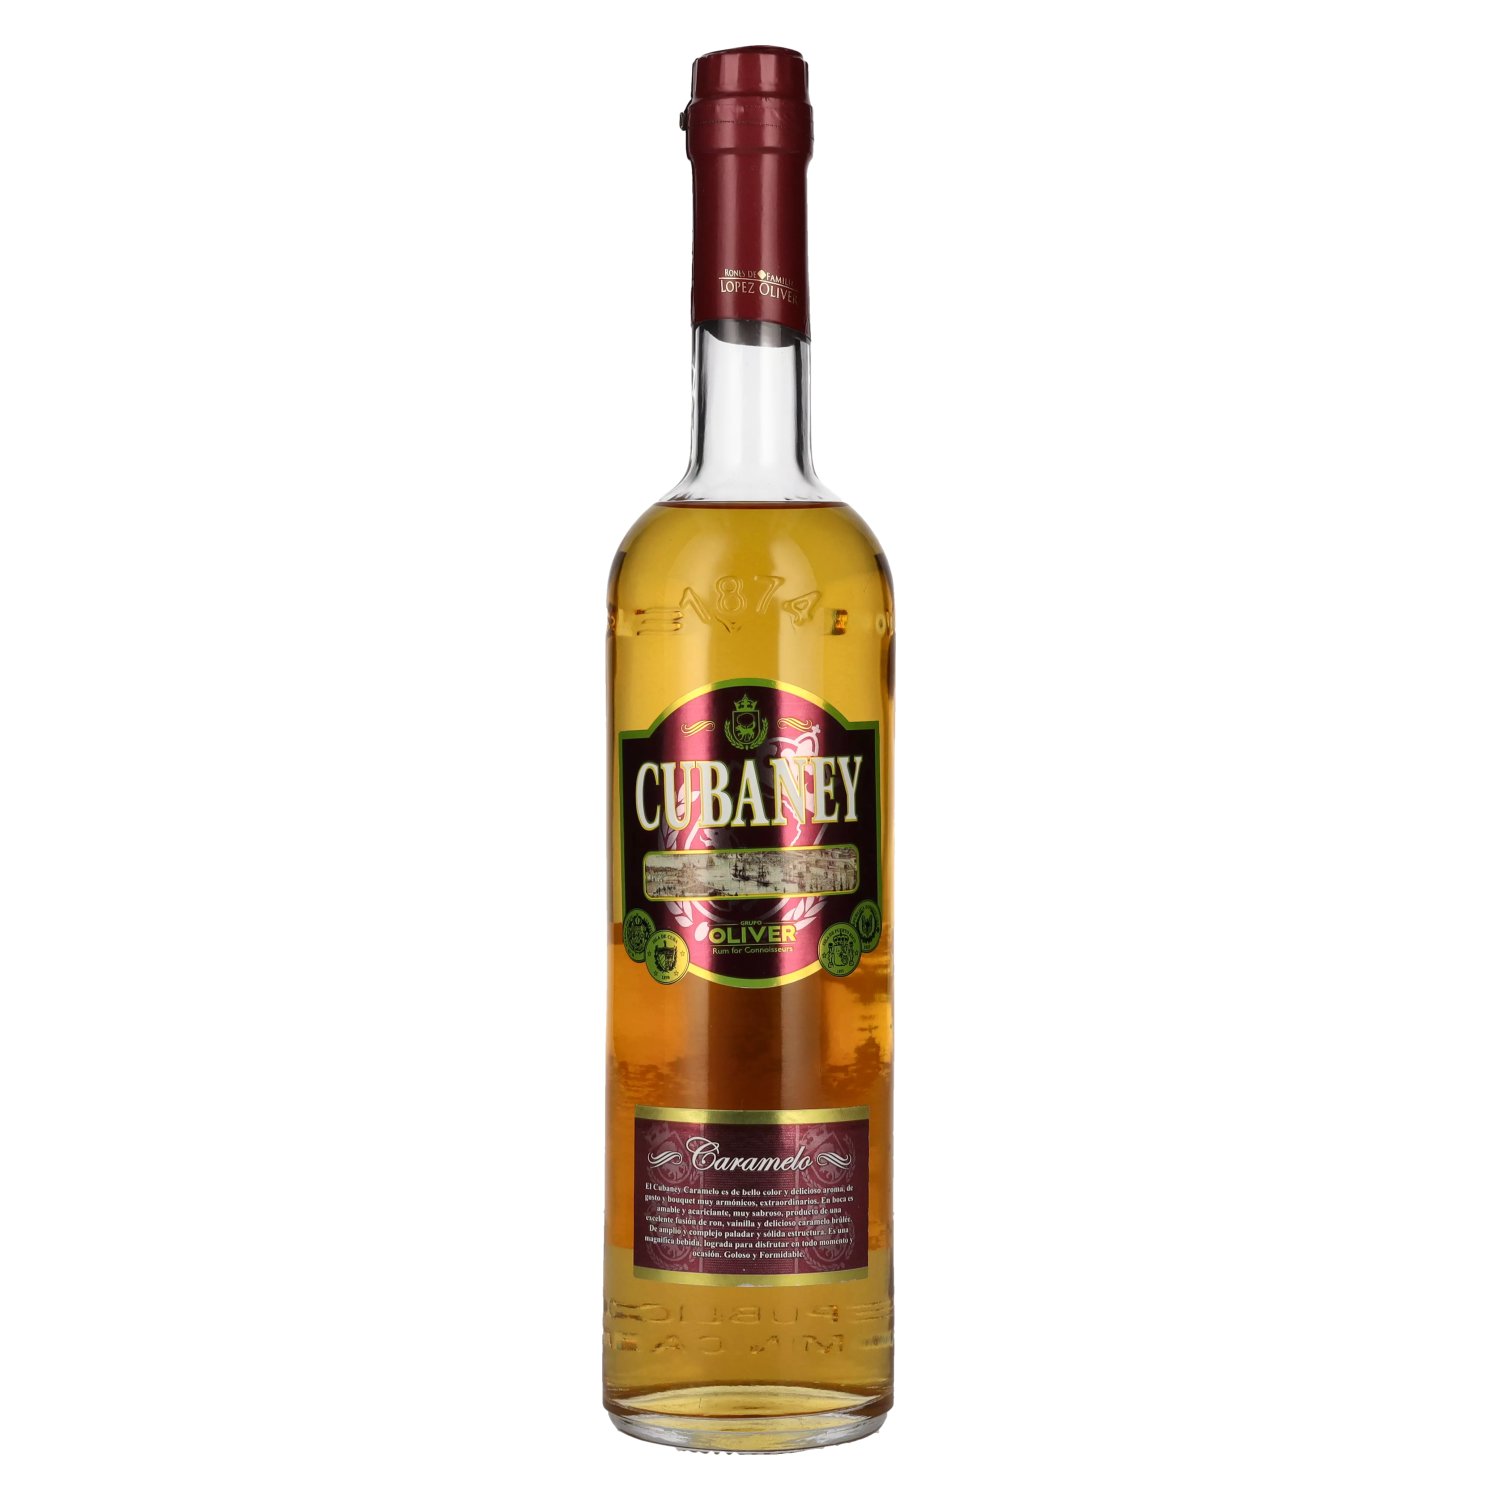 Cubaney Caramelo Spirit Drink 30% Vol. 0,7l - delicando